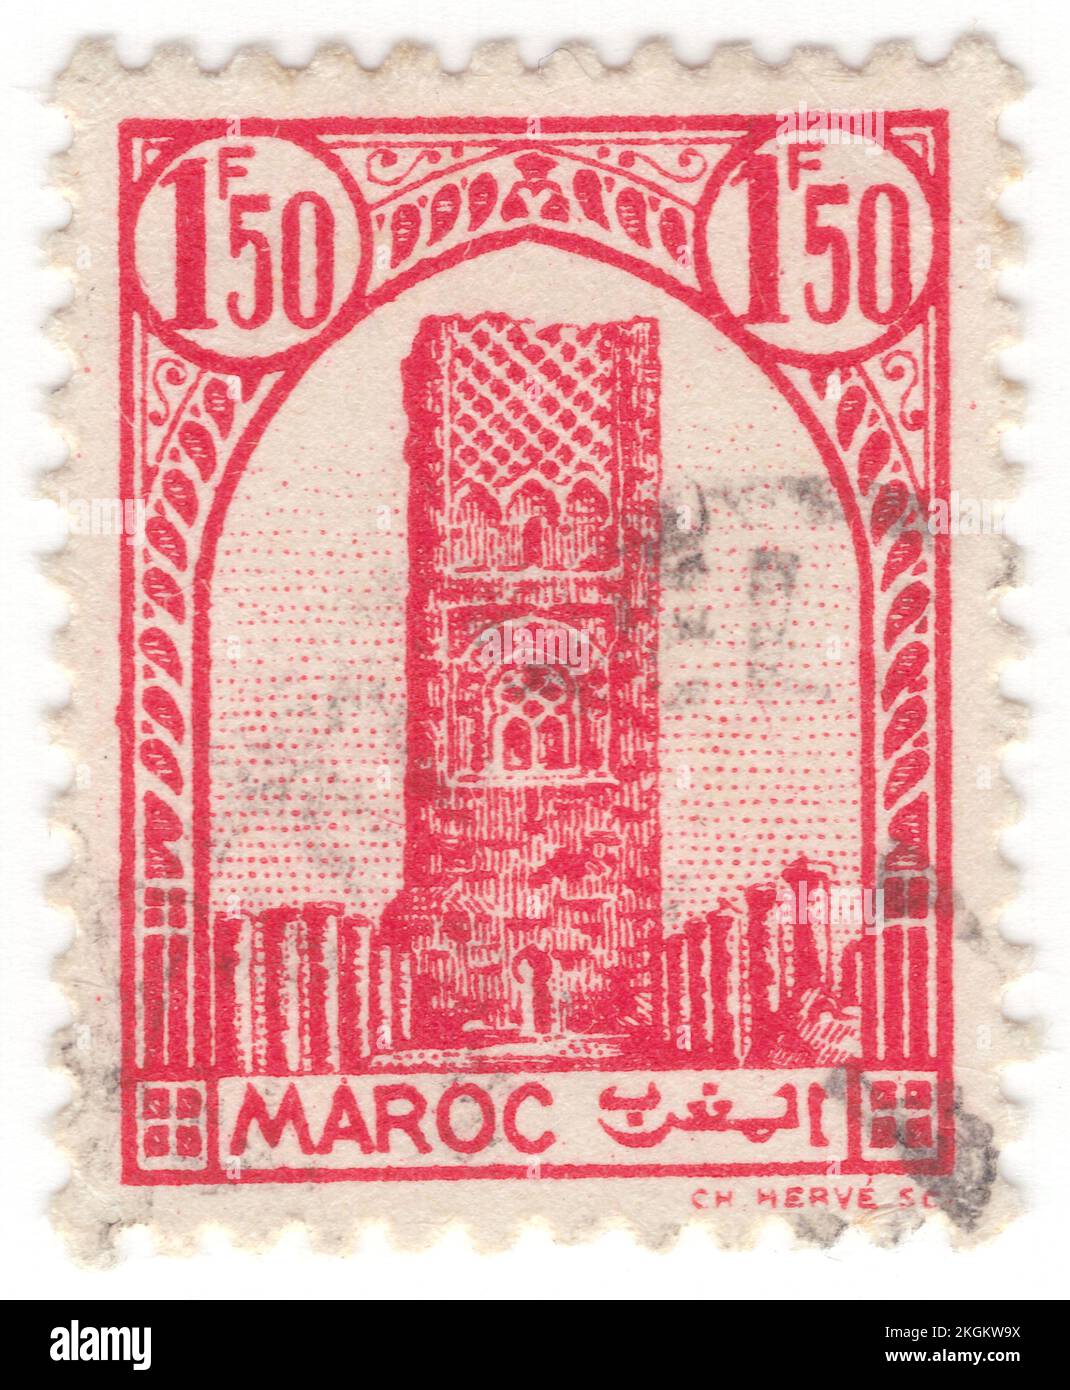 FRANZÖSISCH-MAROKKO - 1943: Eine rote Briefmarke von 1,50 Francs mit dem Turm von Hassan in Rabat, marokkanisches Wahrzeichen. Hassan Tower oder Tour Hassan ist das Minarett einer unvollständigen Moschee in Rabat, Marokko. Es wurde von Abu Yusuf Yaqub al-Mansur in Auftrag gegeben, dem dritten Kalifen des Almohad-Kalifats, gegen Ende des 12.. Jahrhunderts. Der Turm sollte das größte Minarett der Welt sein, und die Moschee wäre, wenn sie fertiggestellt wäre, die größte in der westlichen muslimischen Welt gewesen. Als al-Mansur 1199 starb, hörte der Bau der Moschee auf Stockfoto